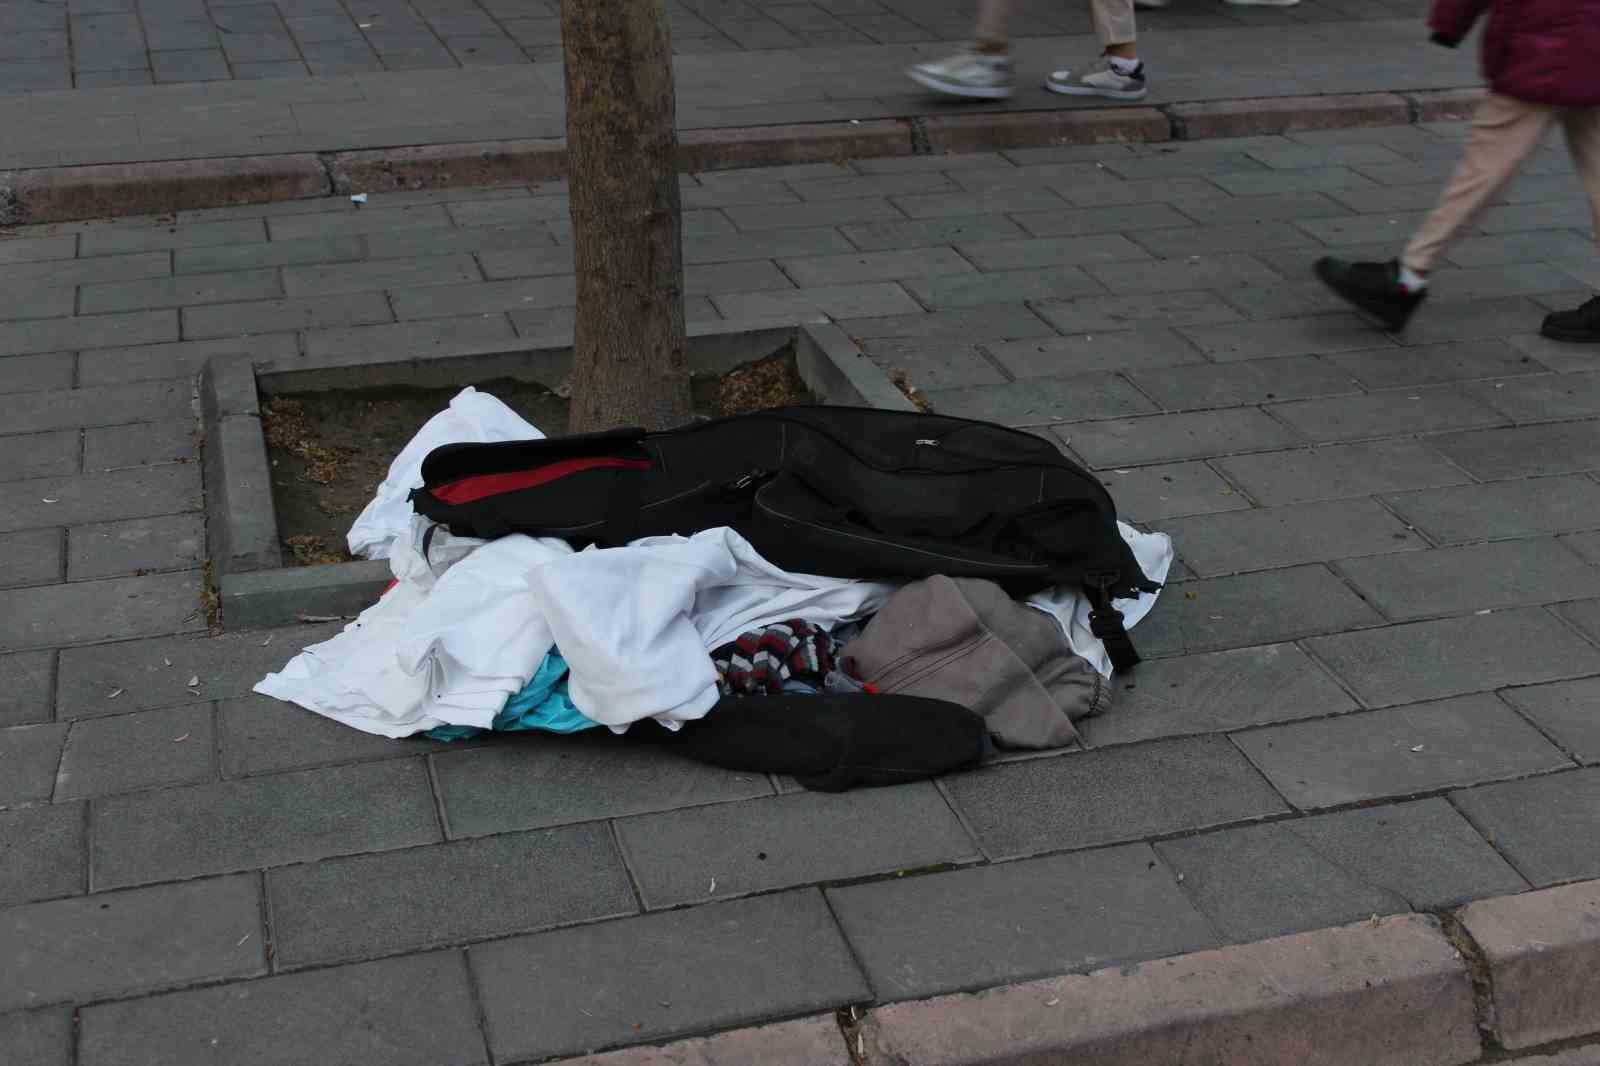 Kayseri’de aynı bölgede bulunan üç şüpheli çanta fünyeyle patlatıldı
